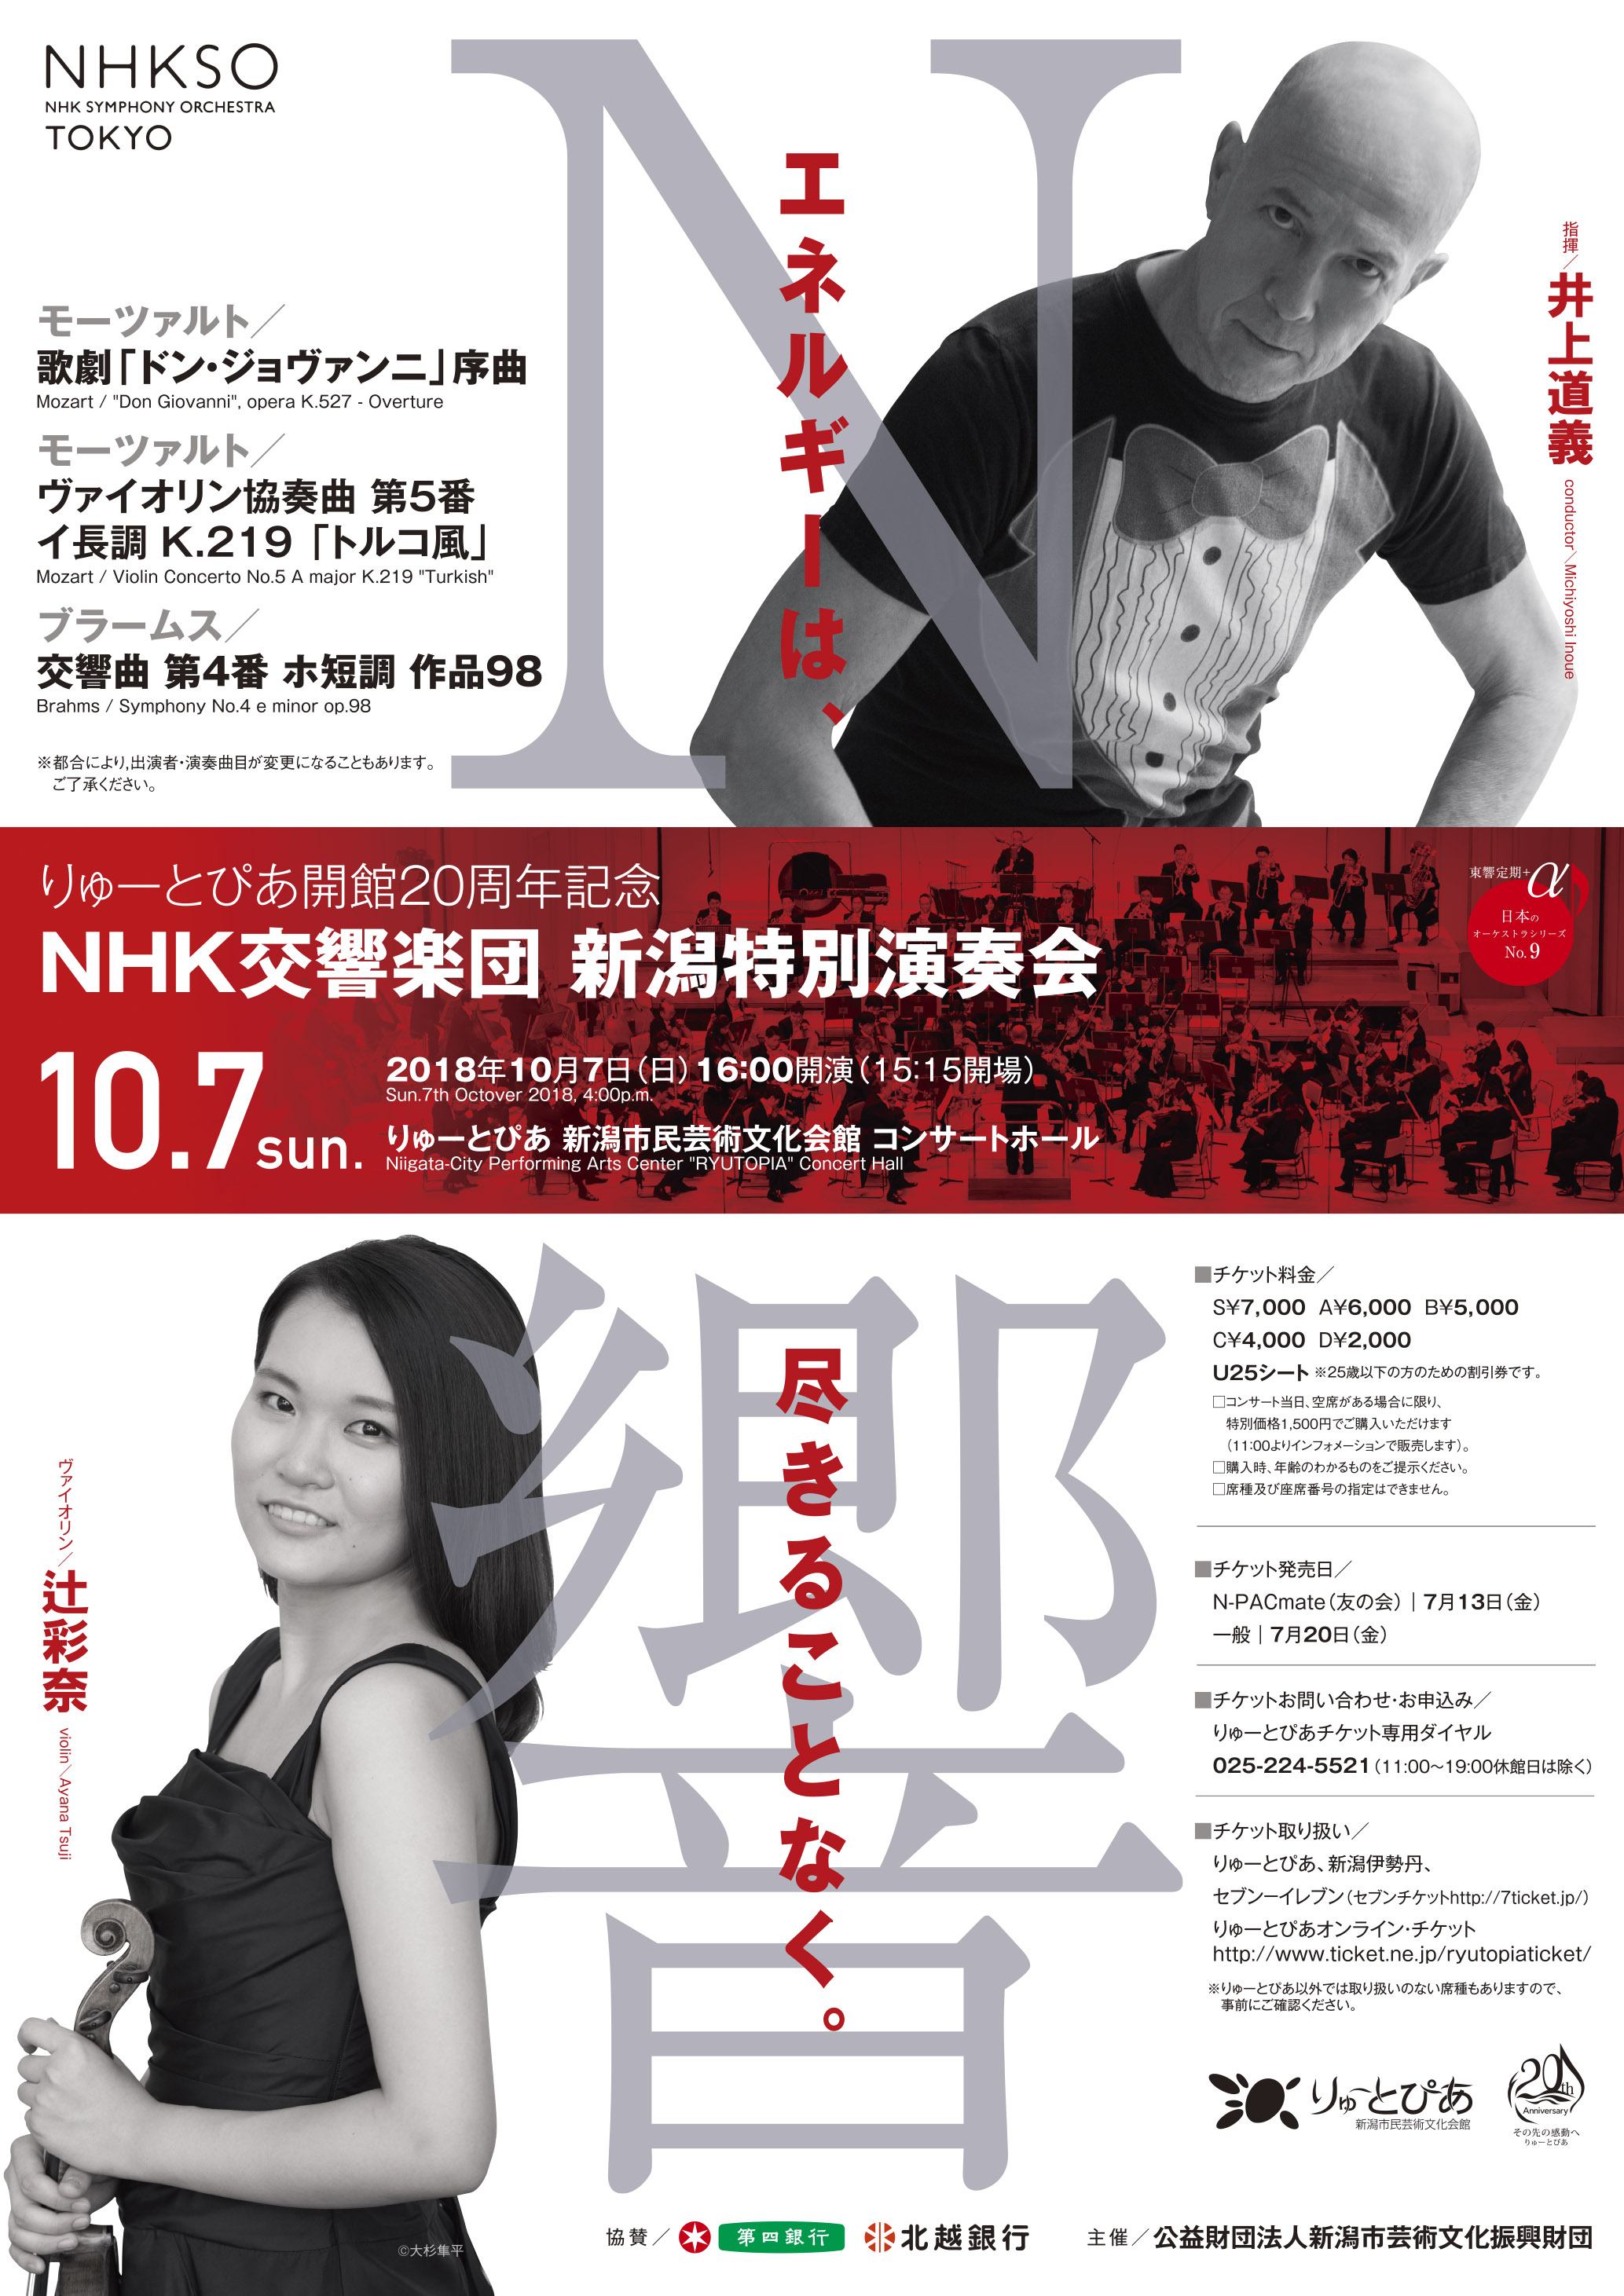 枚数3枚NHK交響楽団定期公演456月です。バラ可能。S席前列で迫力あります。